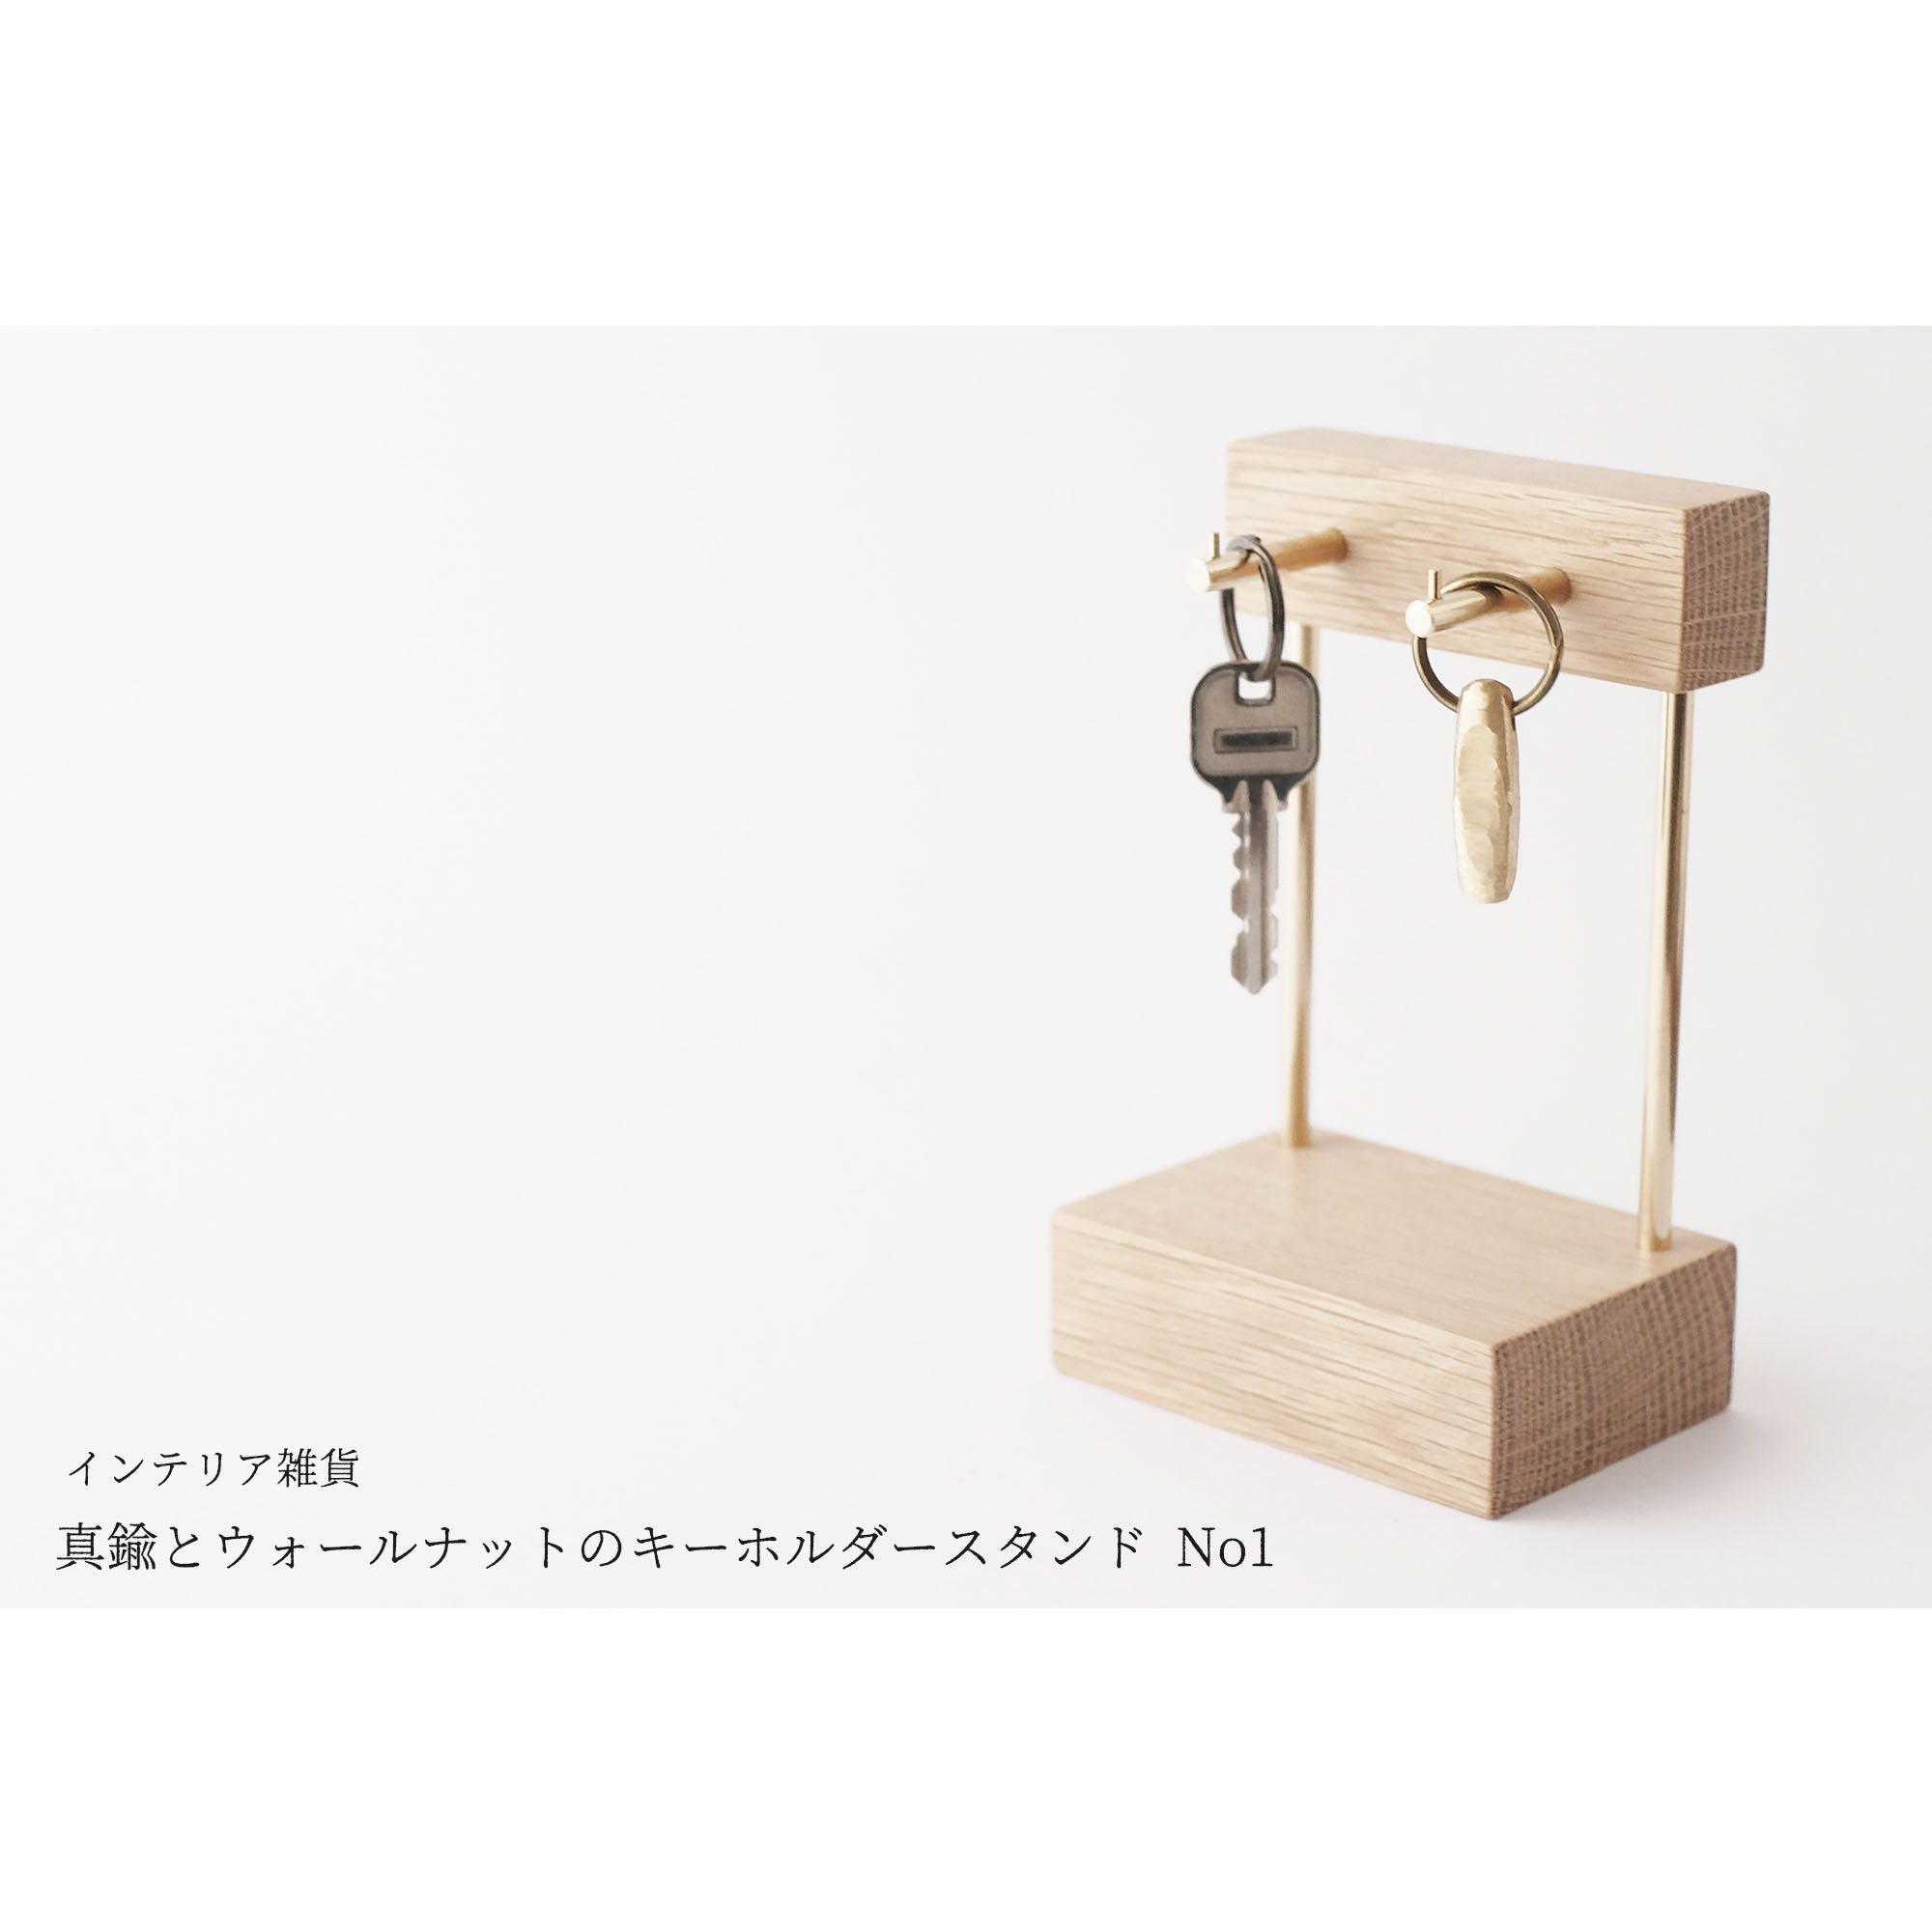 新作 真鍮とホワイトオークのキーホルダースタンド No1 Iichi ハンドメイド クラフト作品 手仕事品の通販